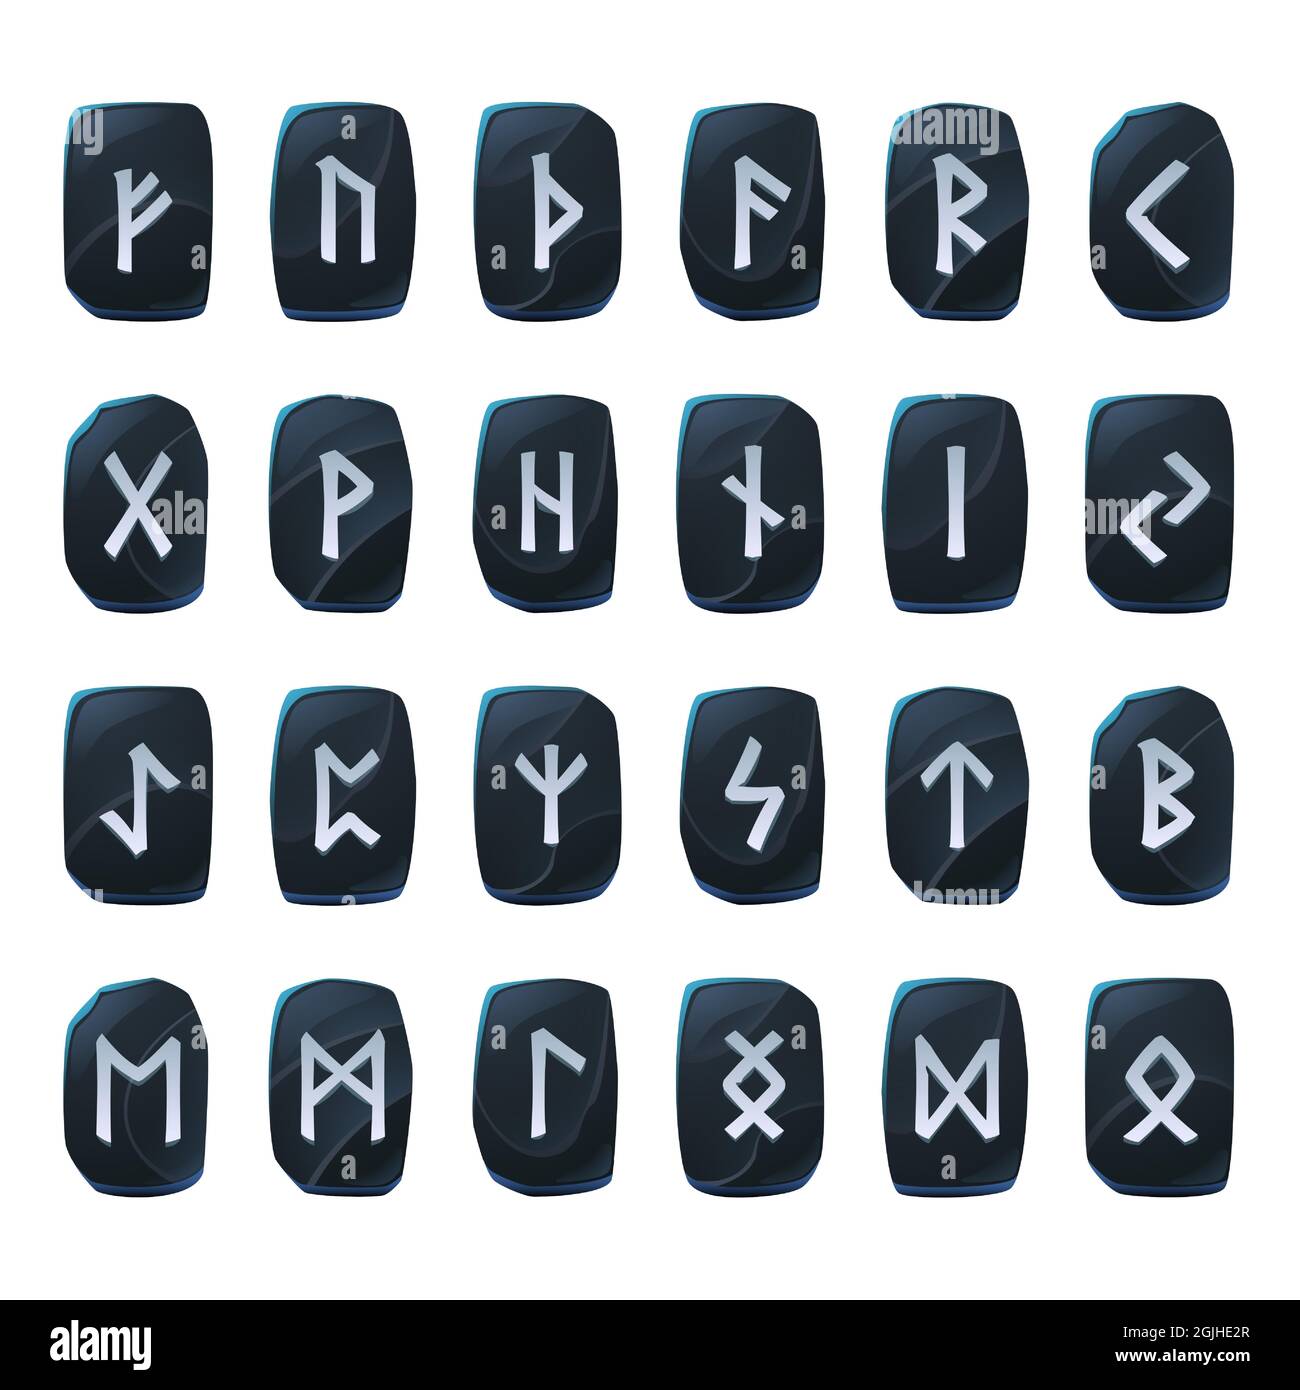 Set di rune onice, alfabeto antico nordico, futark celtico vichingo simboli incisi su pezzi di pietra nera. Segni occulti esoterici, elementi mistici di interfaccia utente o gui, illustrazione vettoriale di cartoni animati isolati Illustrazione Vettoriale